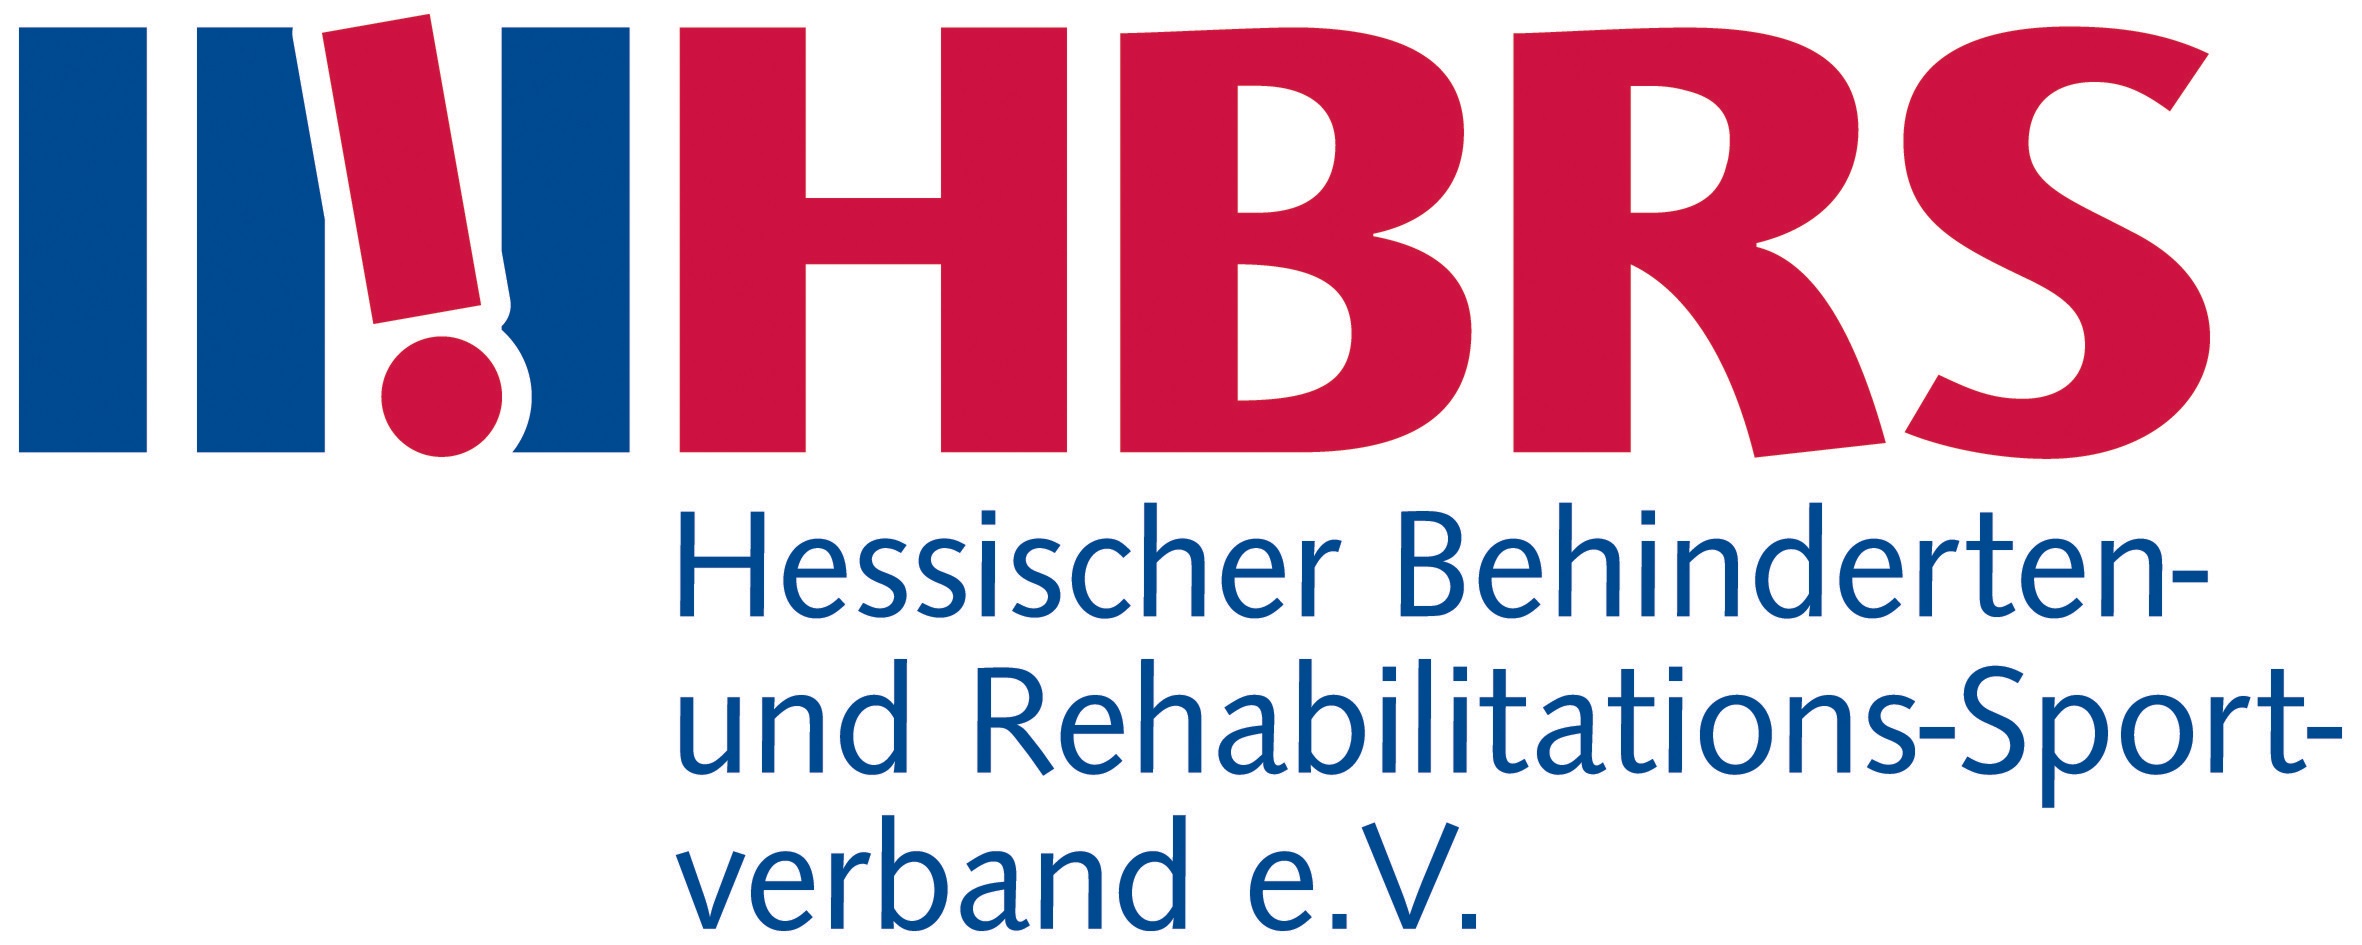 Logog HBRS